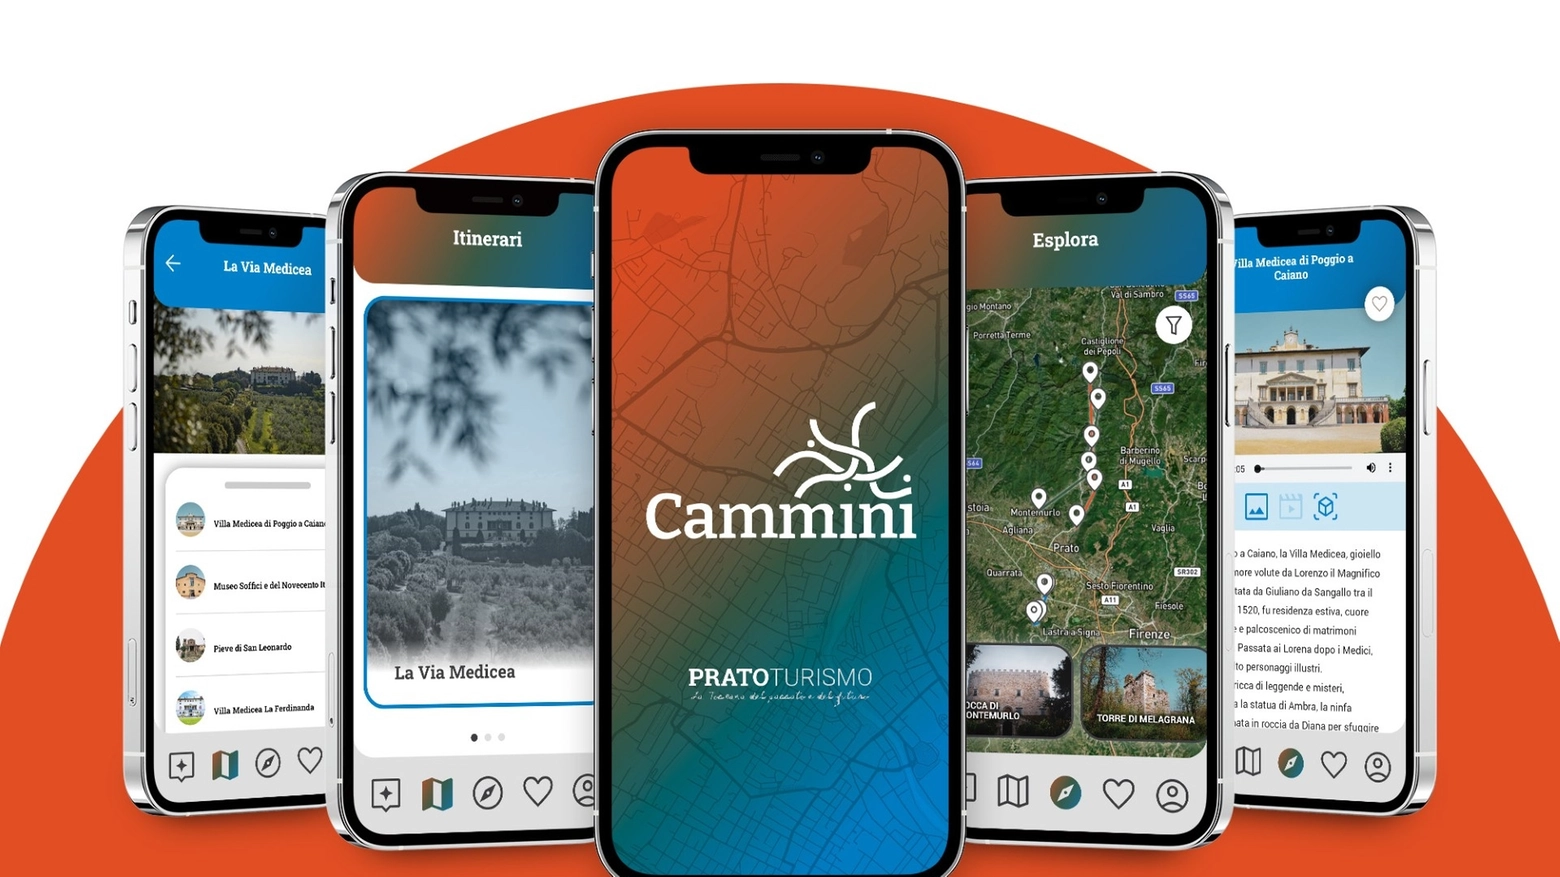 L'App "Cammini" è stata realizzata su incarico dell'Assessorato al Turismo del comune di Prato dalla società "Space S.p.A", grazia a un finanziamento dalla Regione Toscana